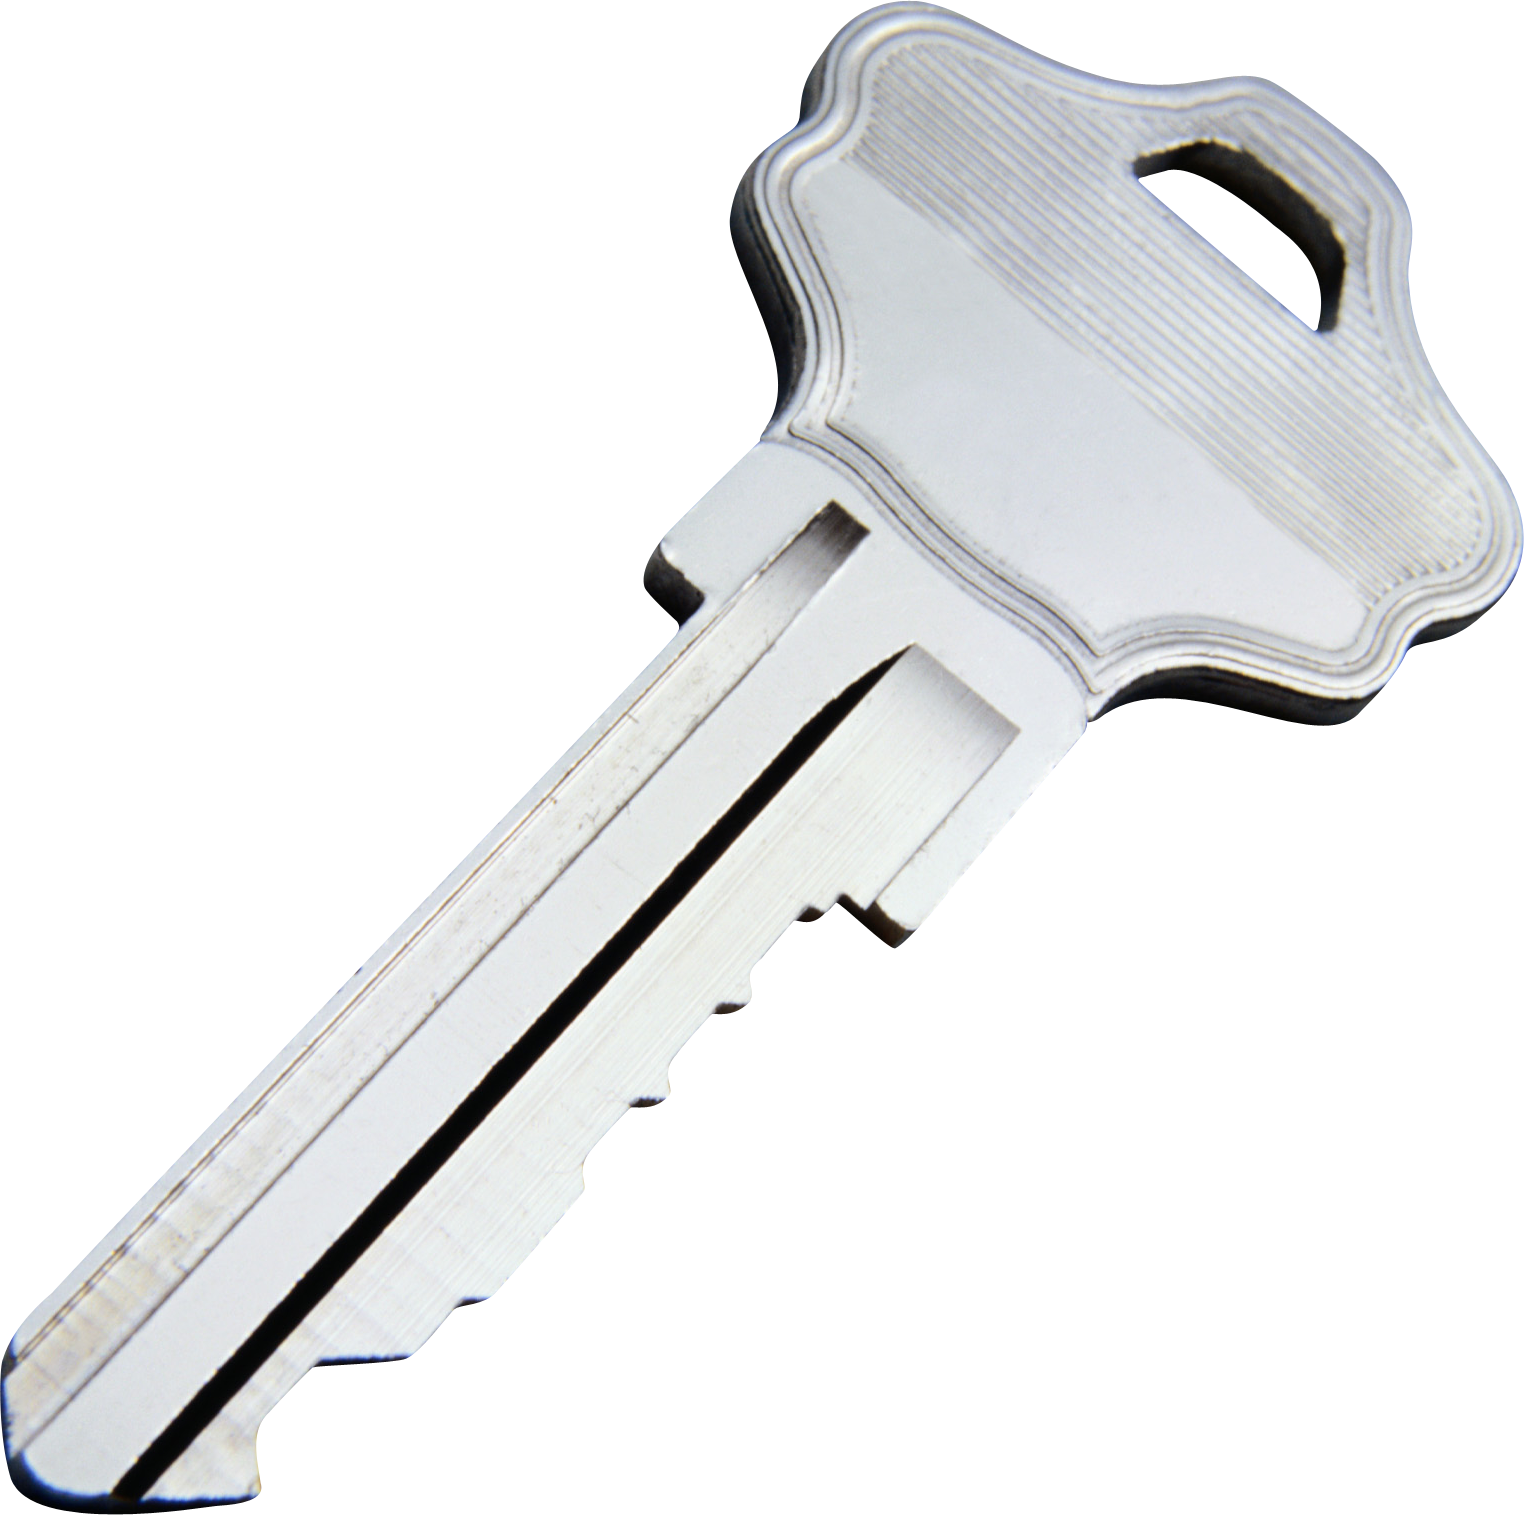 Keys Transparent Image